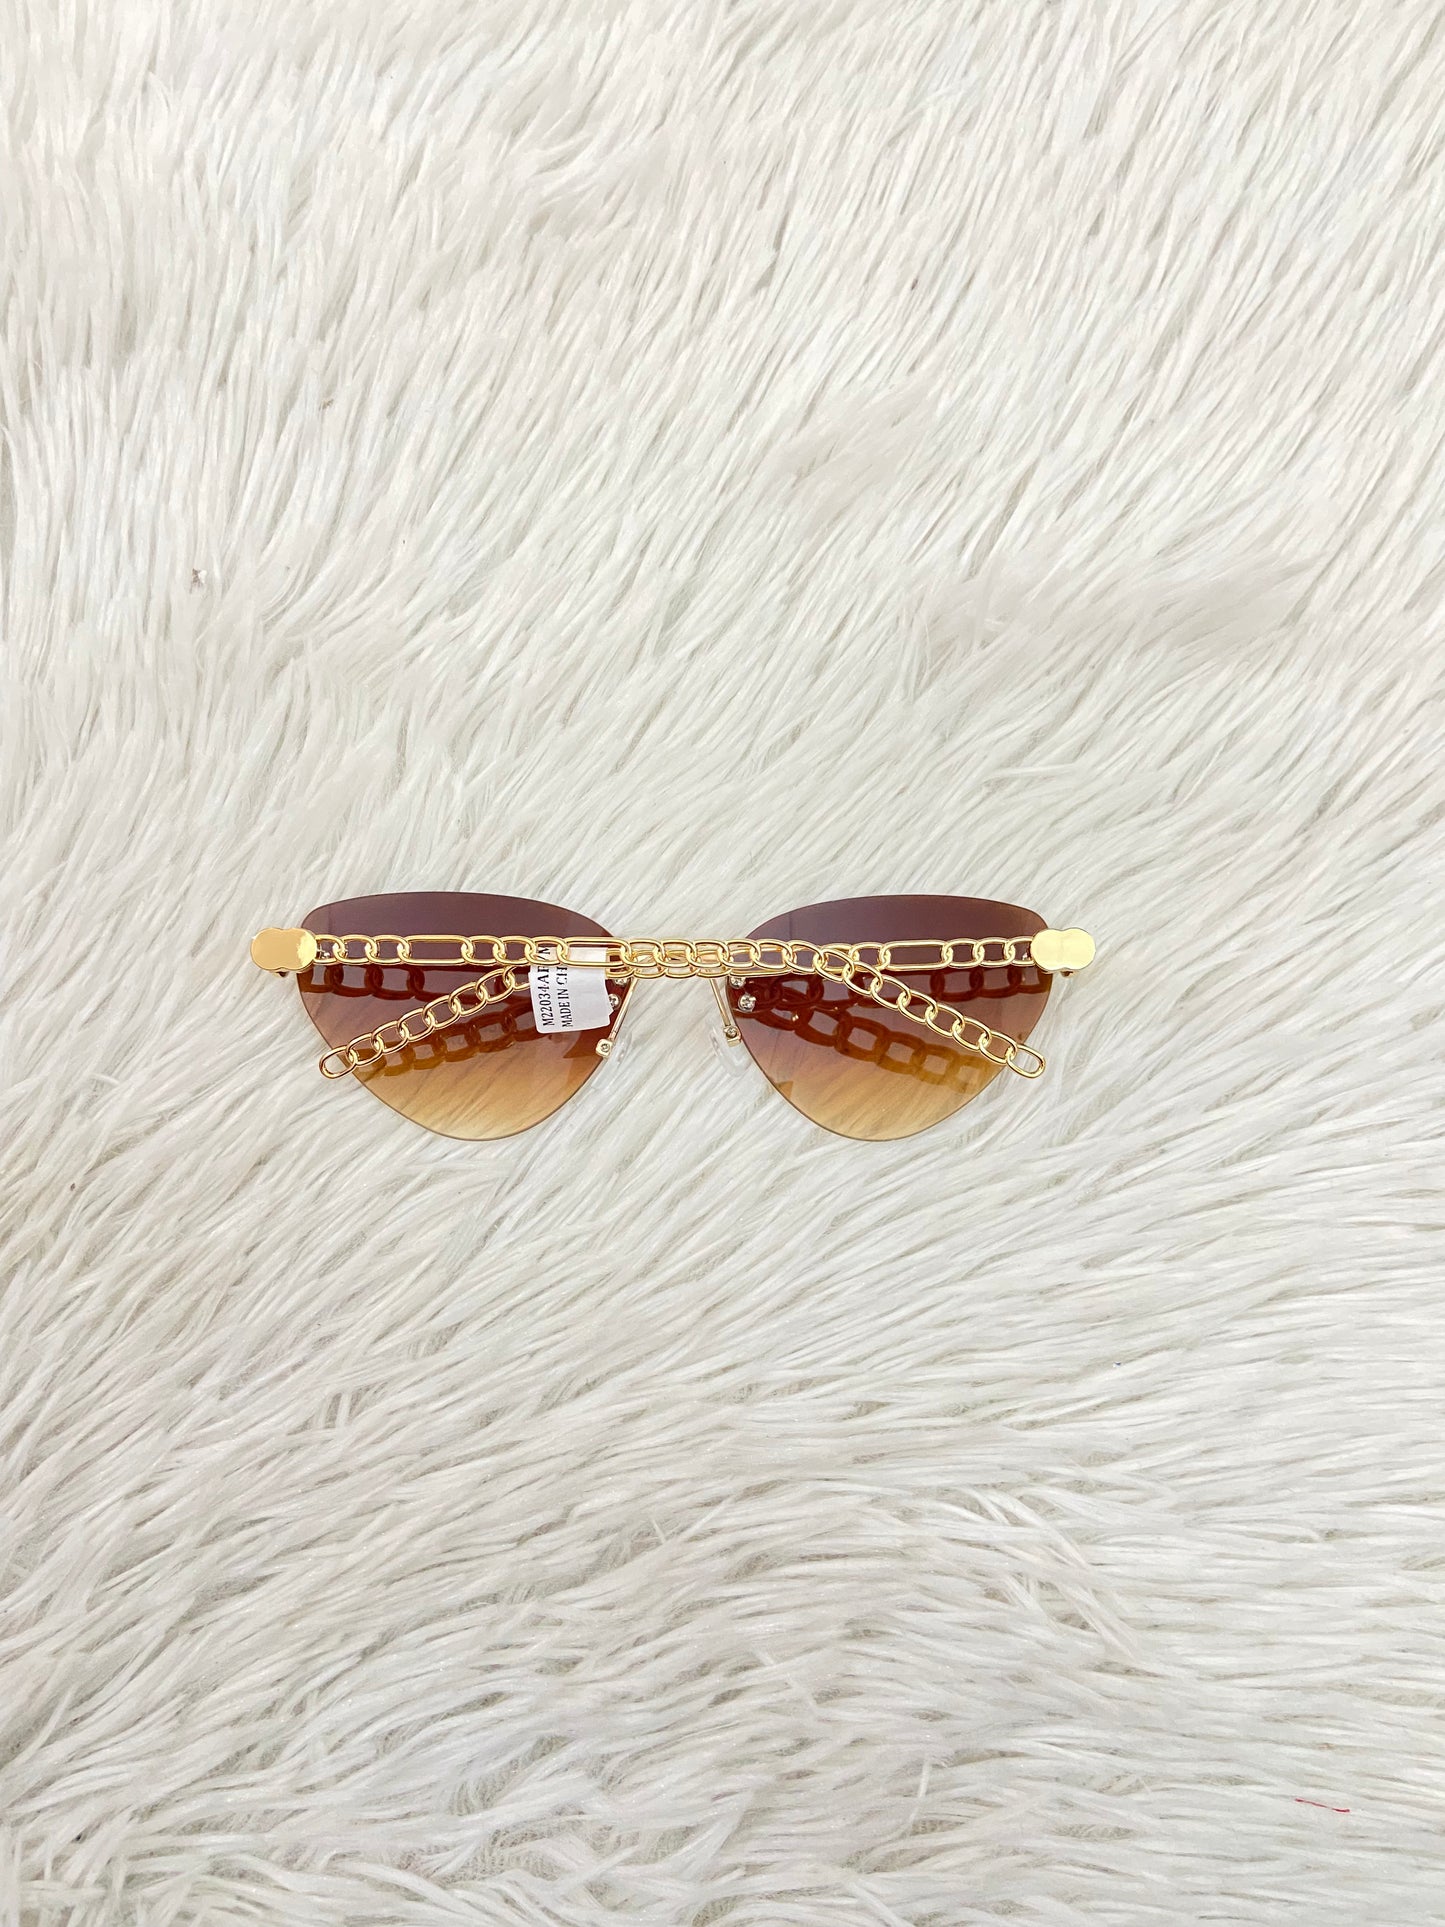 Lentes polycarbonate Fashion Nova original cristal de color marron y montura de color dorado con estilo cadena PROTECCION UV 100